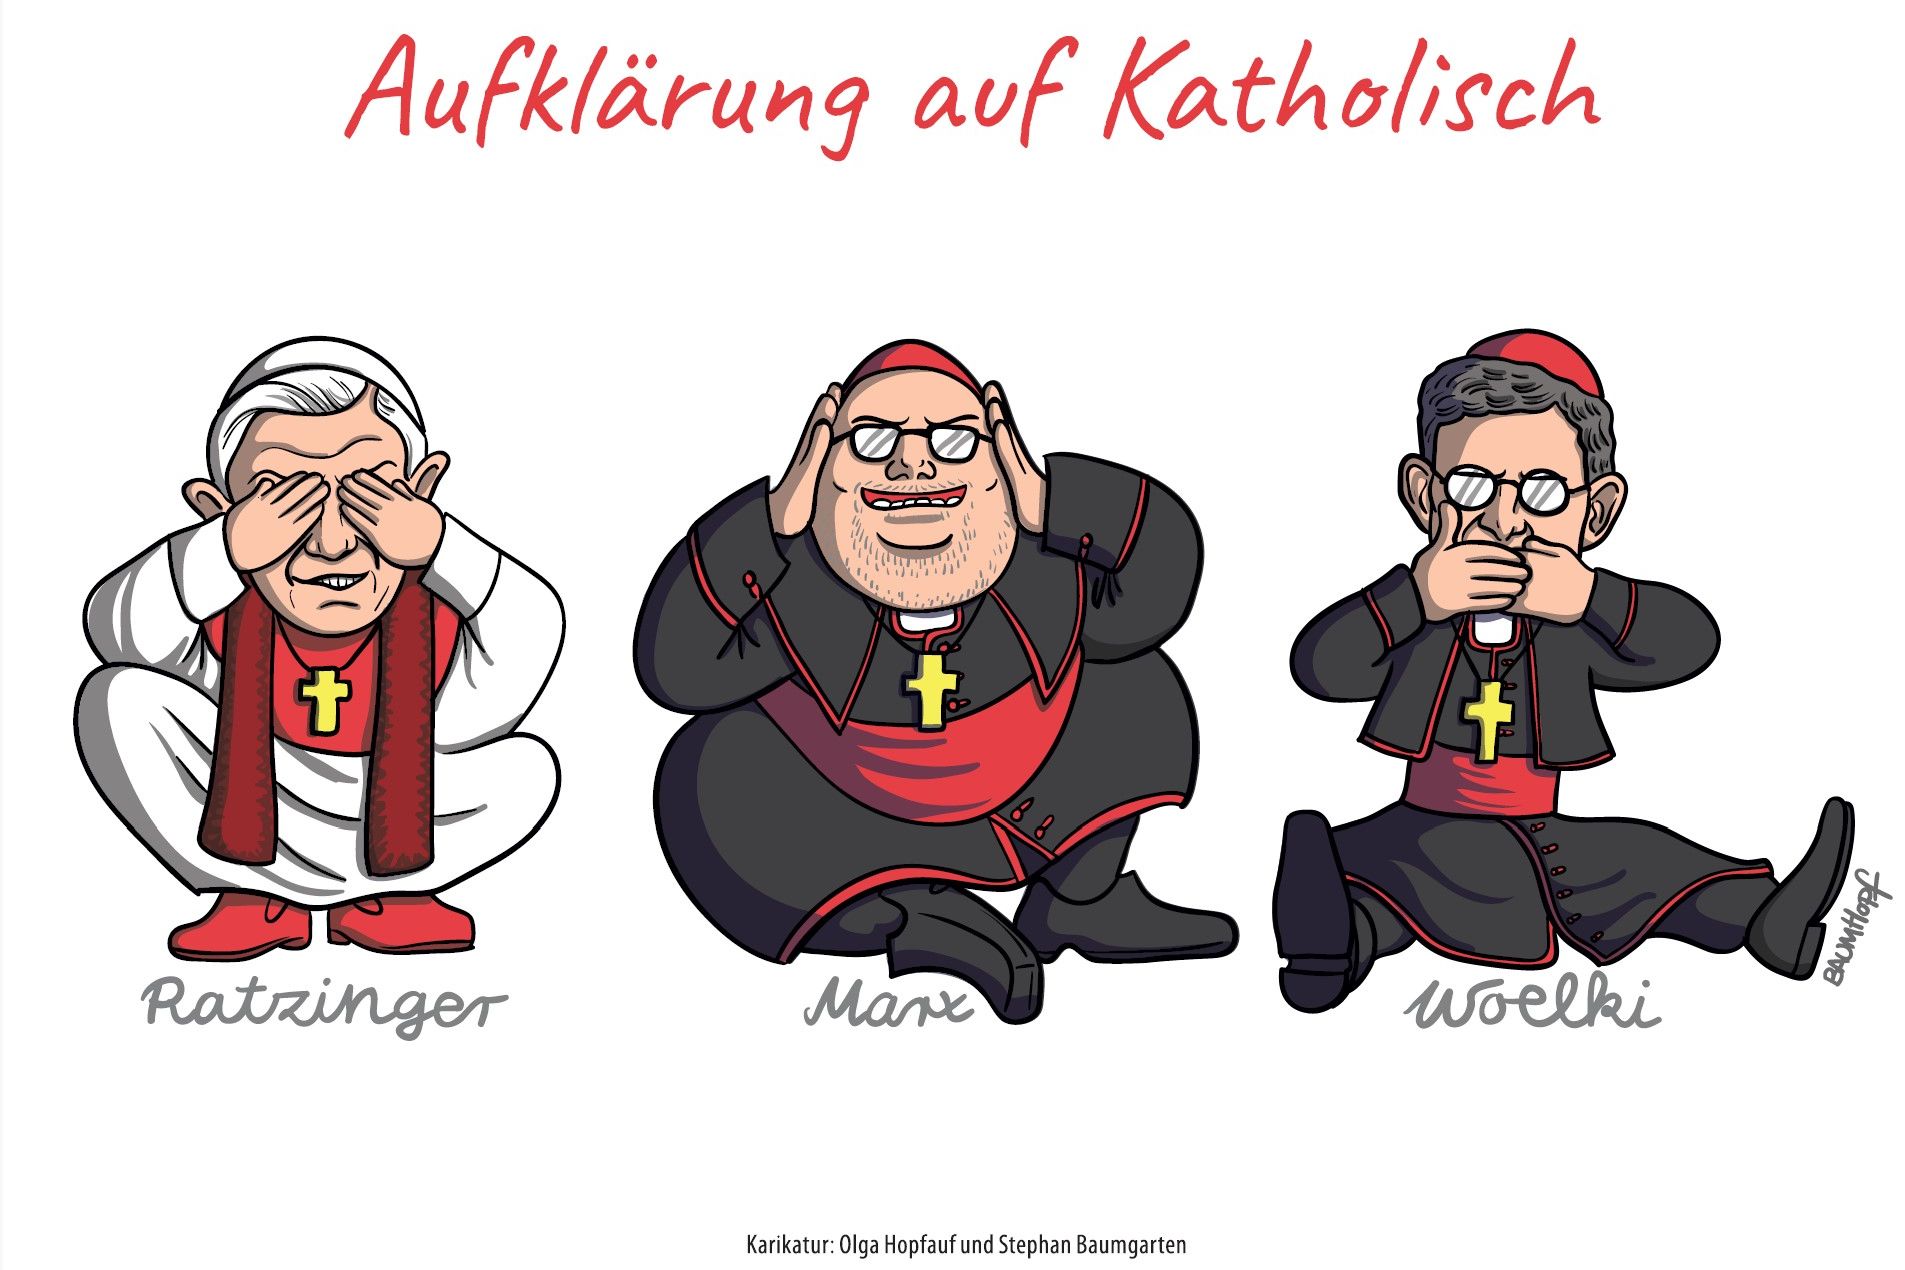 Postkart: "Aufklärung auf Katholisch" - Karikatur von Olga Hopfauf und Stephan Baumgarten